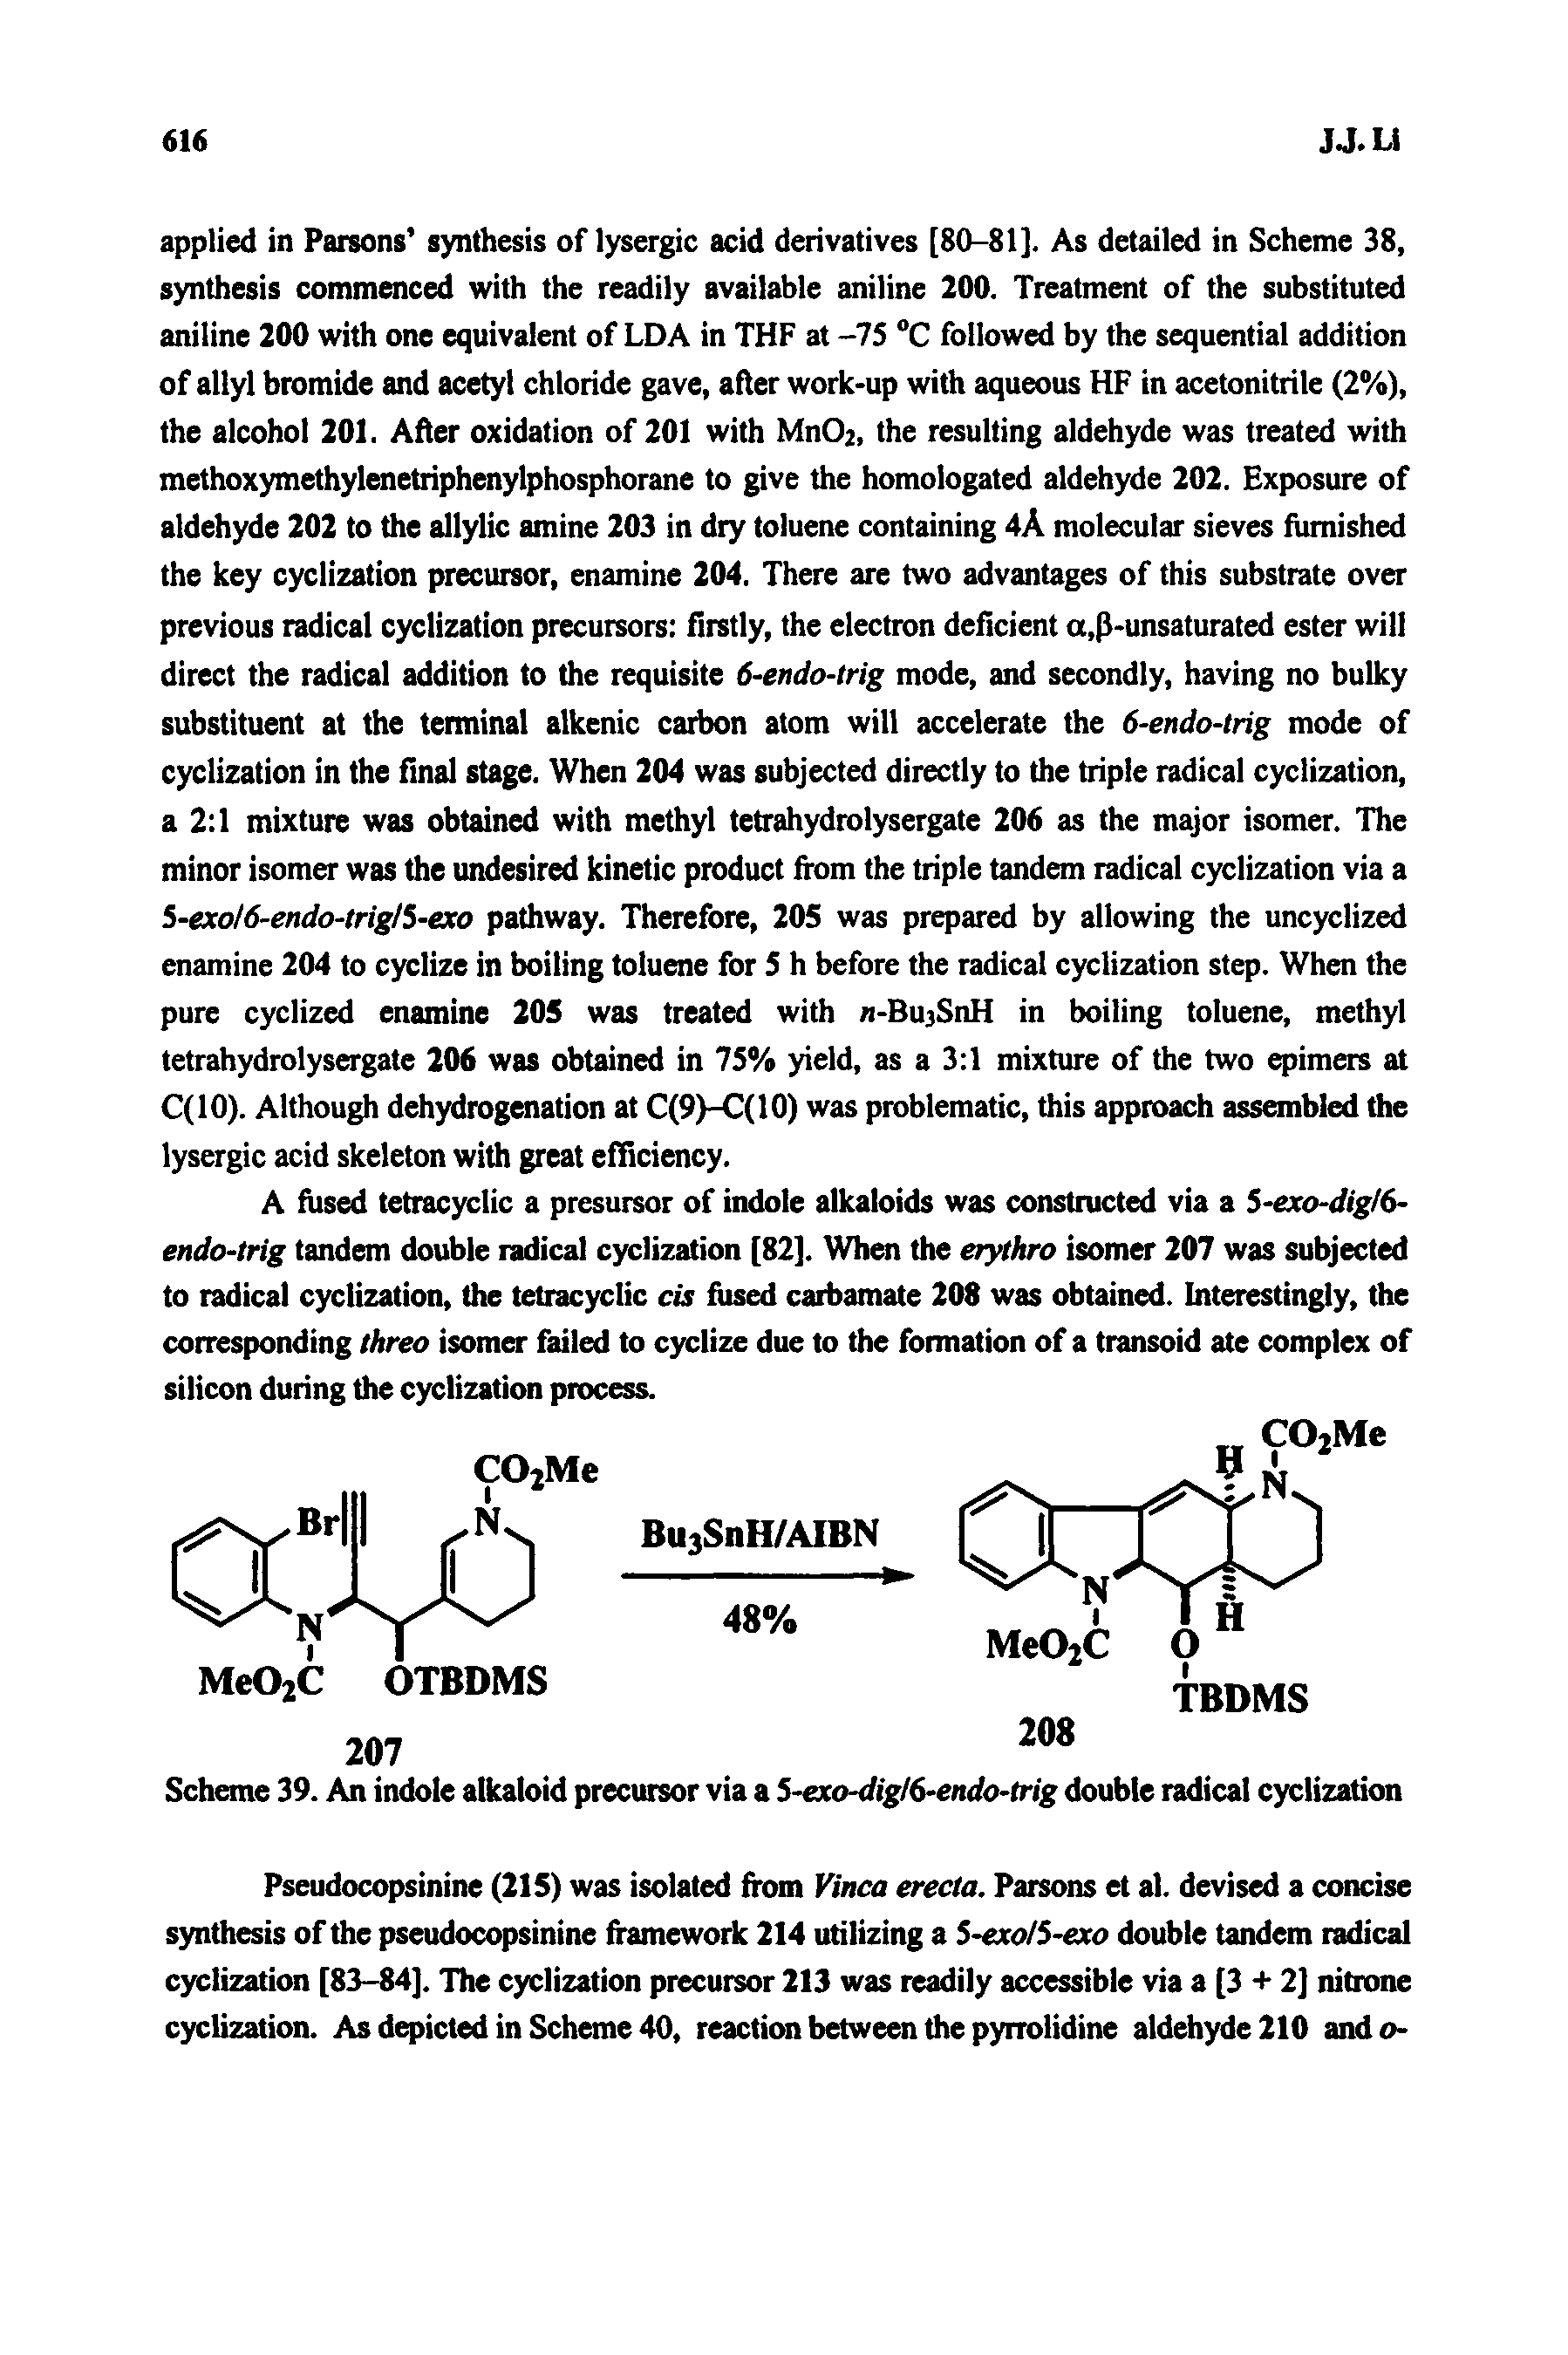 Scheme 39. An indole alkaloid precursor via a 5-exo-digl6-endo-trig double radical cyclization...